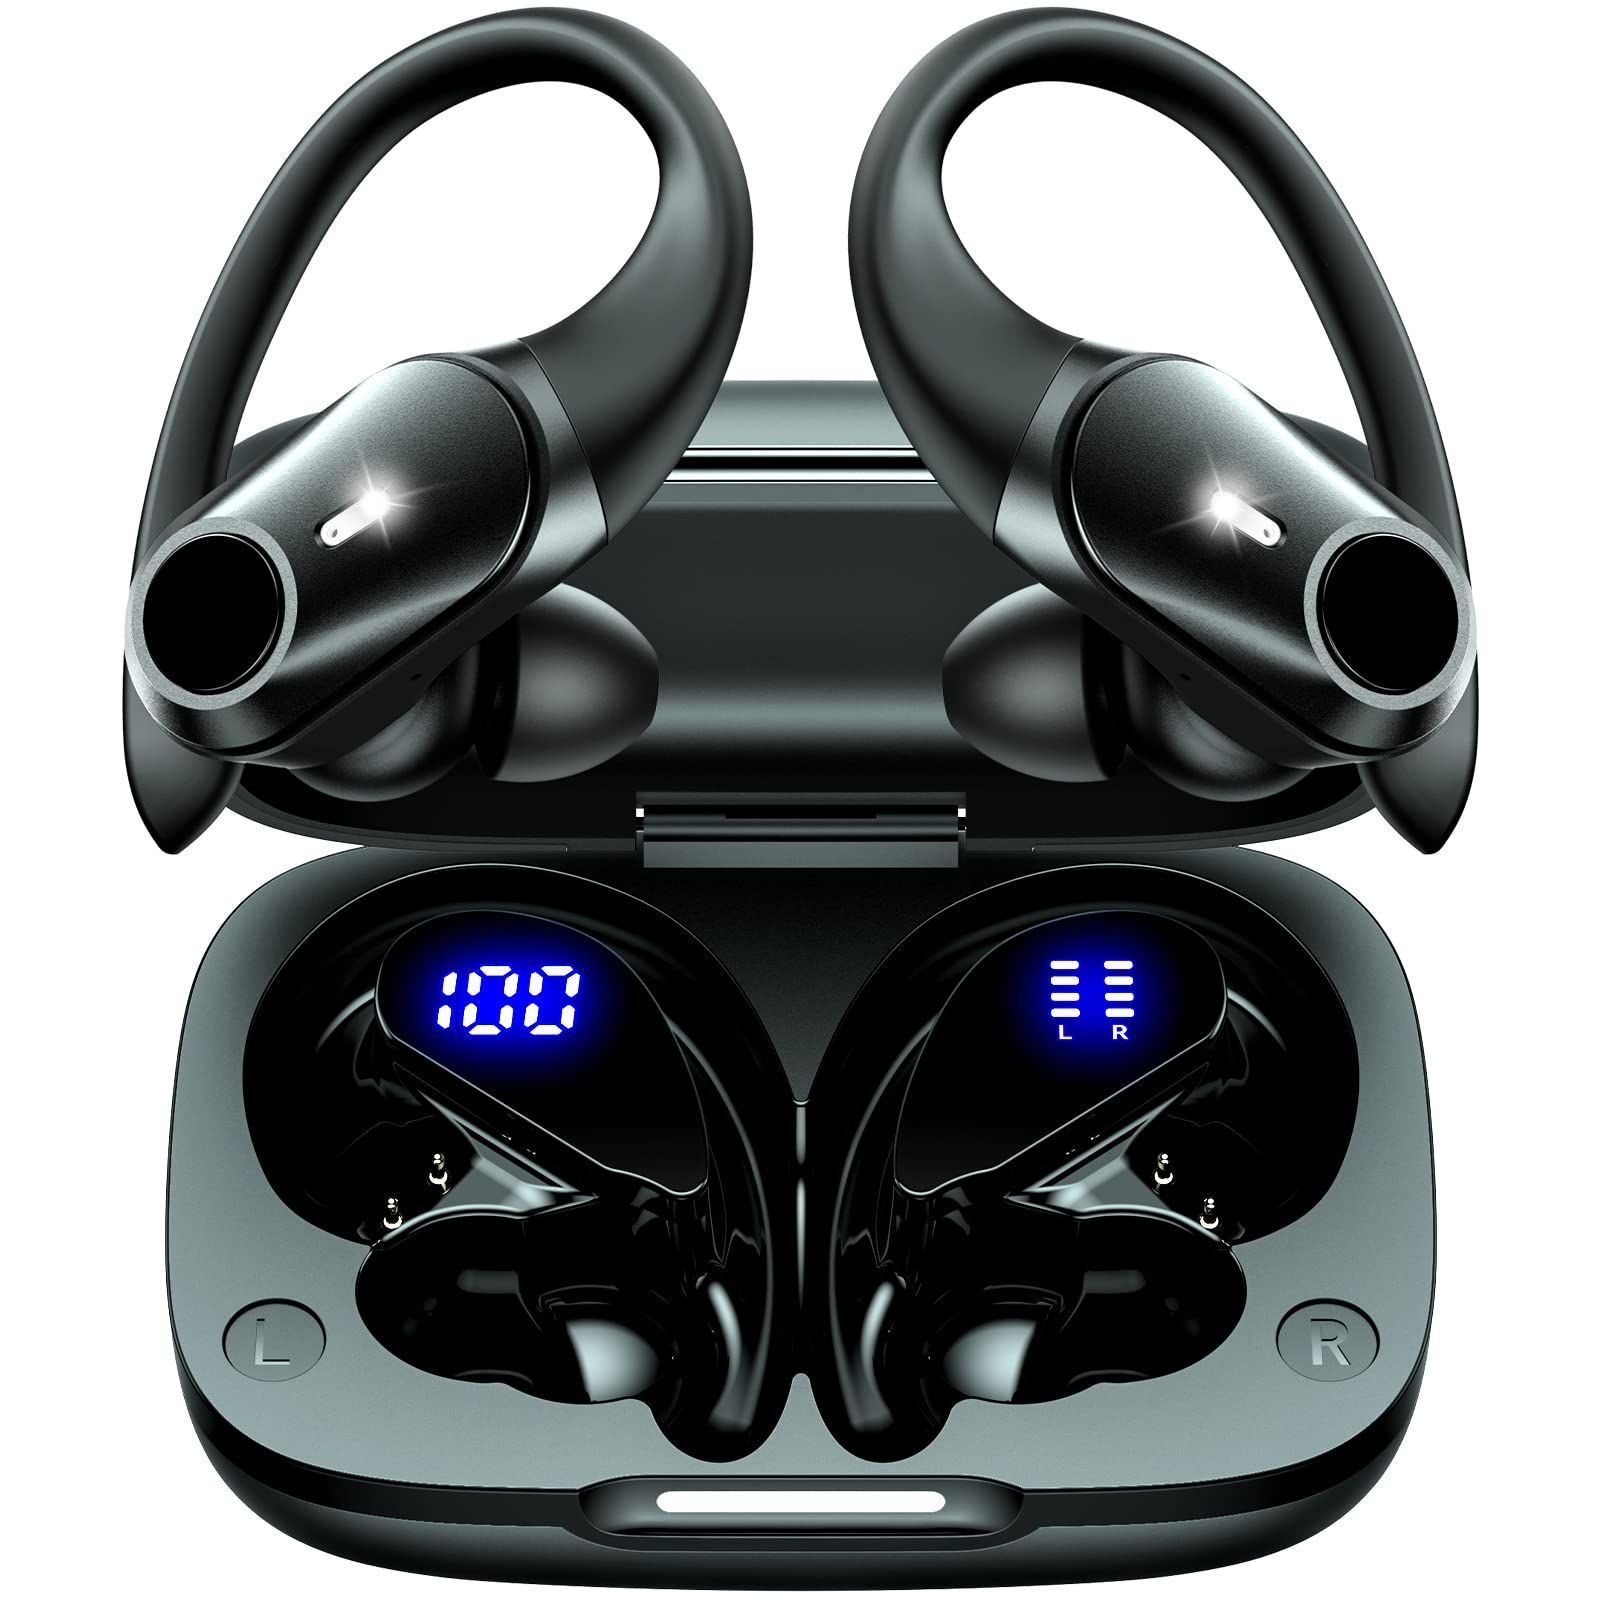 bluetooth 【耳掛け式イヤホン Bluetooth 5.3】 ワイヤレスイヤホン Bluetooth イヤホン 耳掛け ブルートゥースイヤホン  最大40時間再生 13mmドライバー Hi-Fi音質 AAC対応 LEDディスプレイ表示 イヤホン 多機能物 ガジェット品のお悩み解決しています！  メルカリ